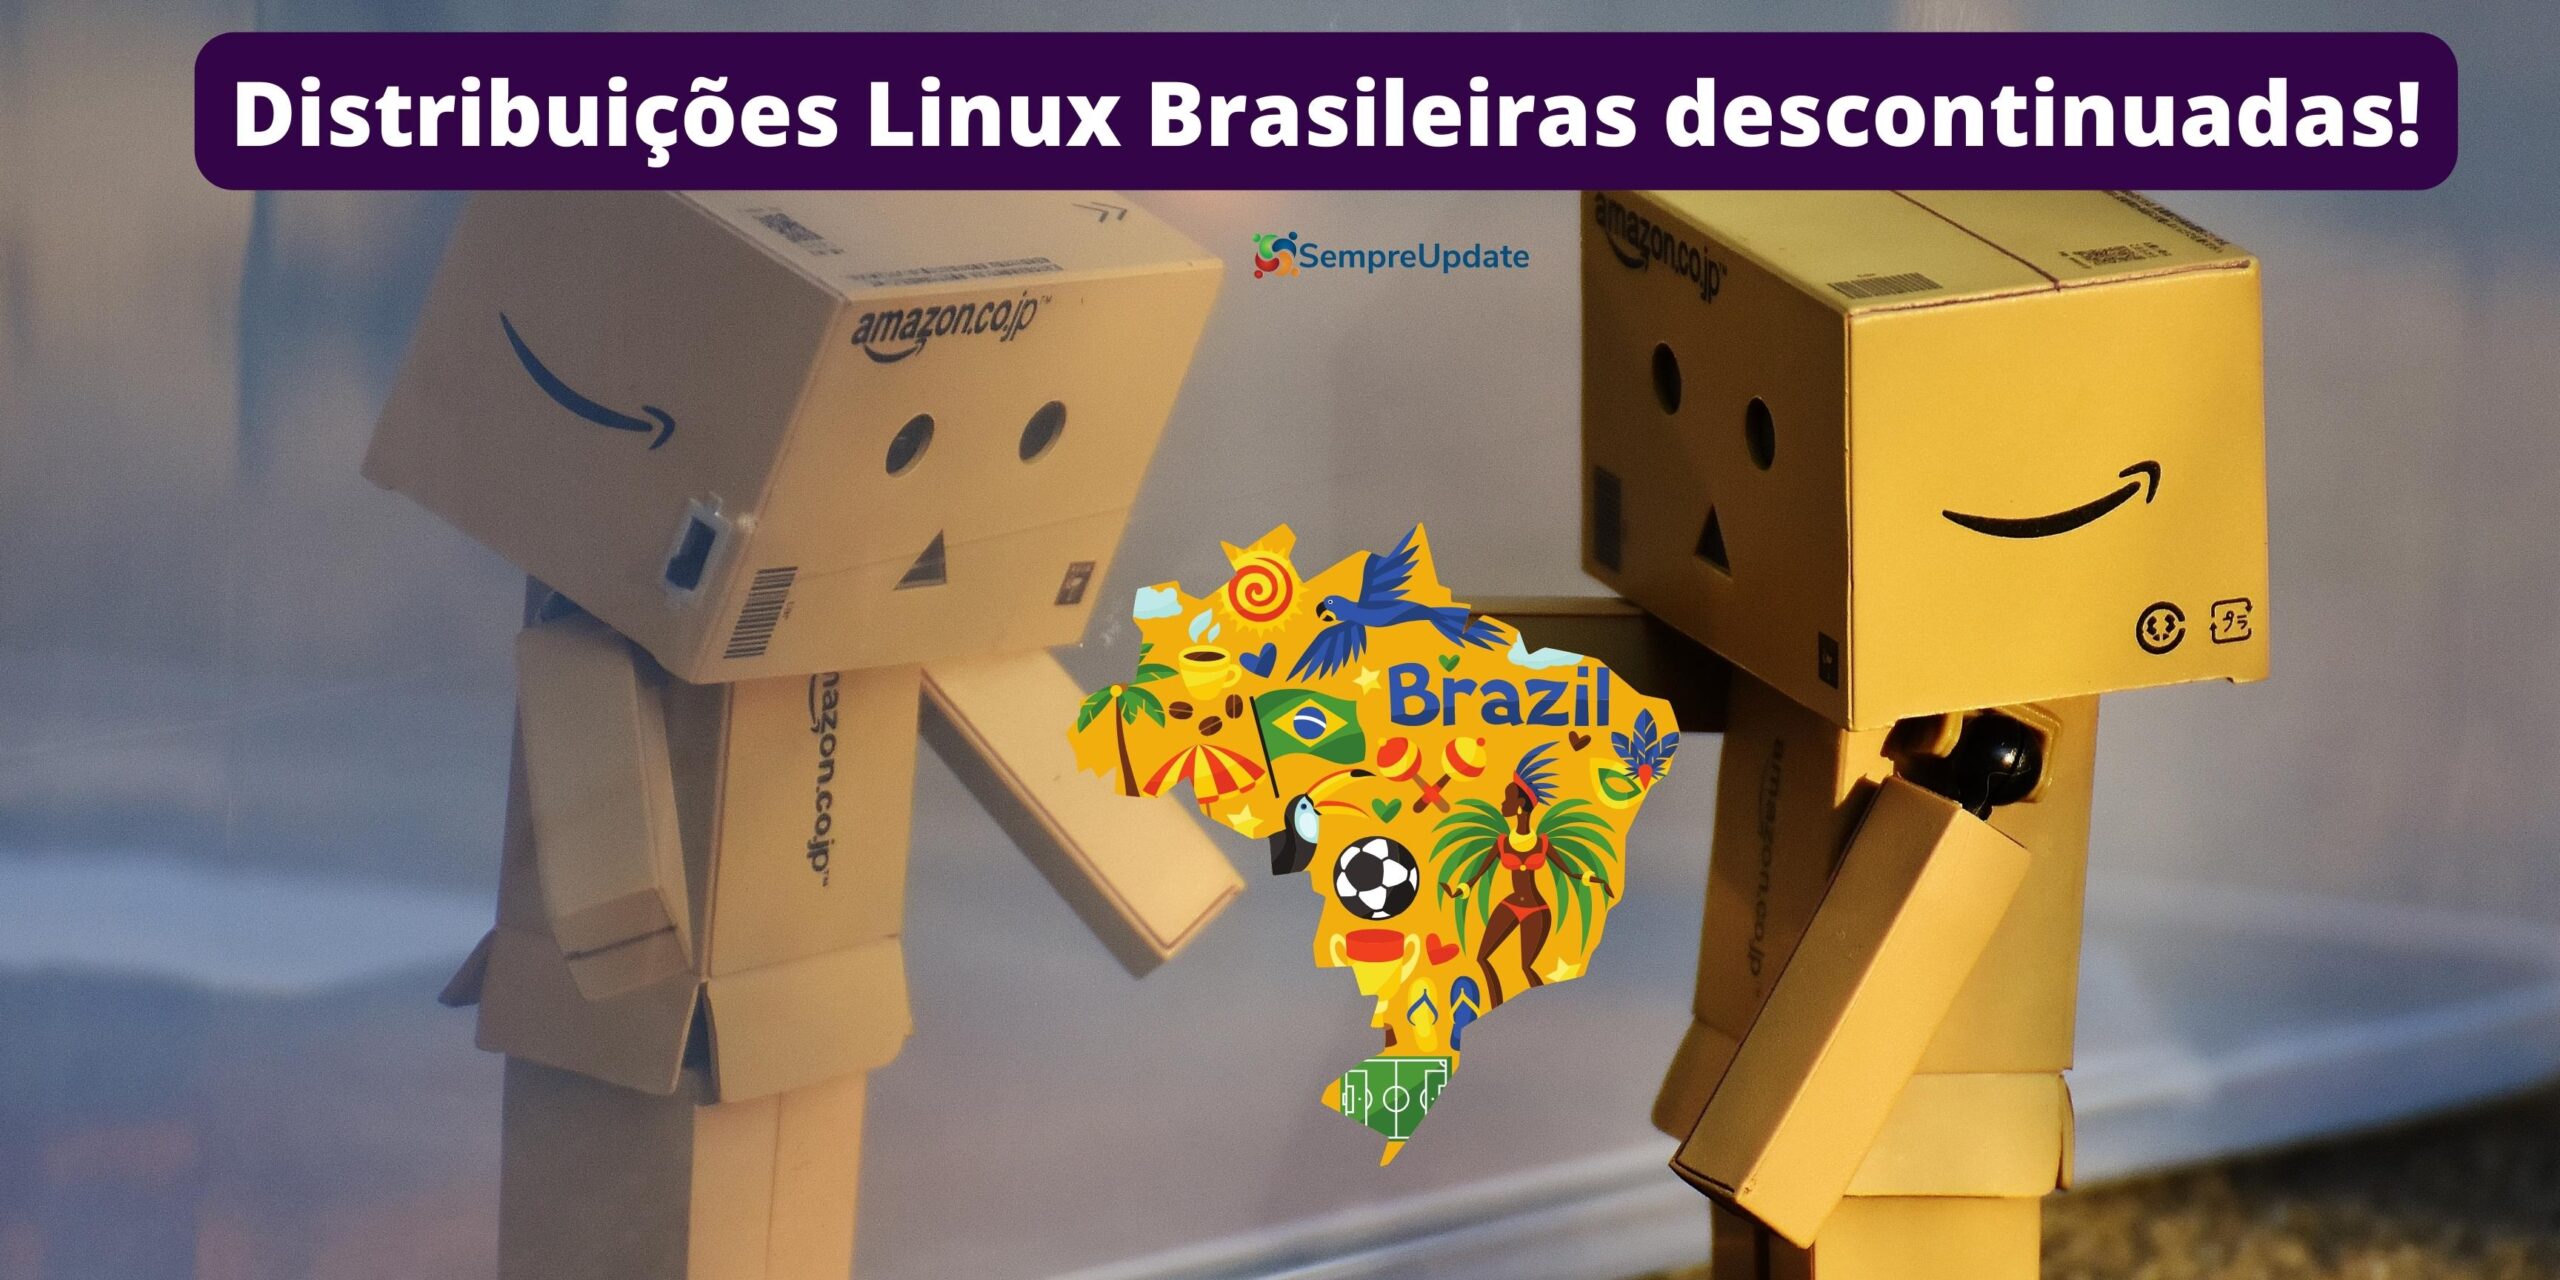 Distribuições Linux brasileiras, o que aconteceu com elas?